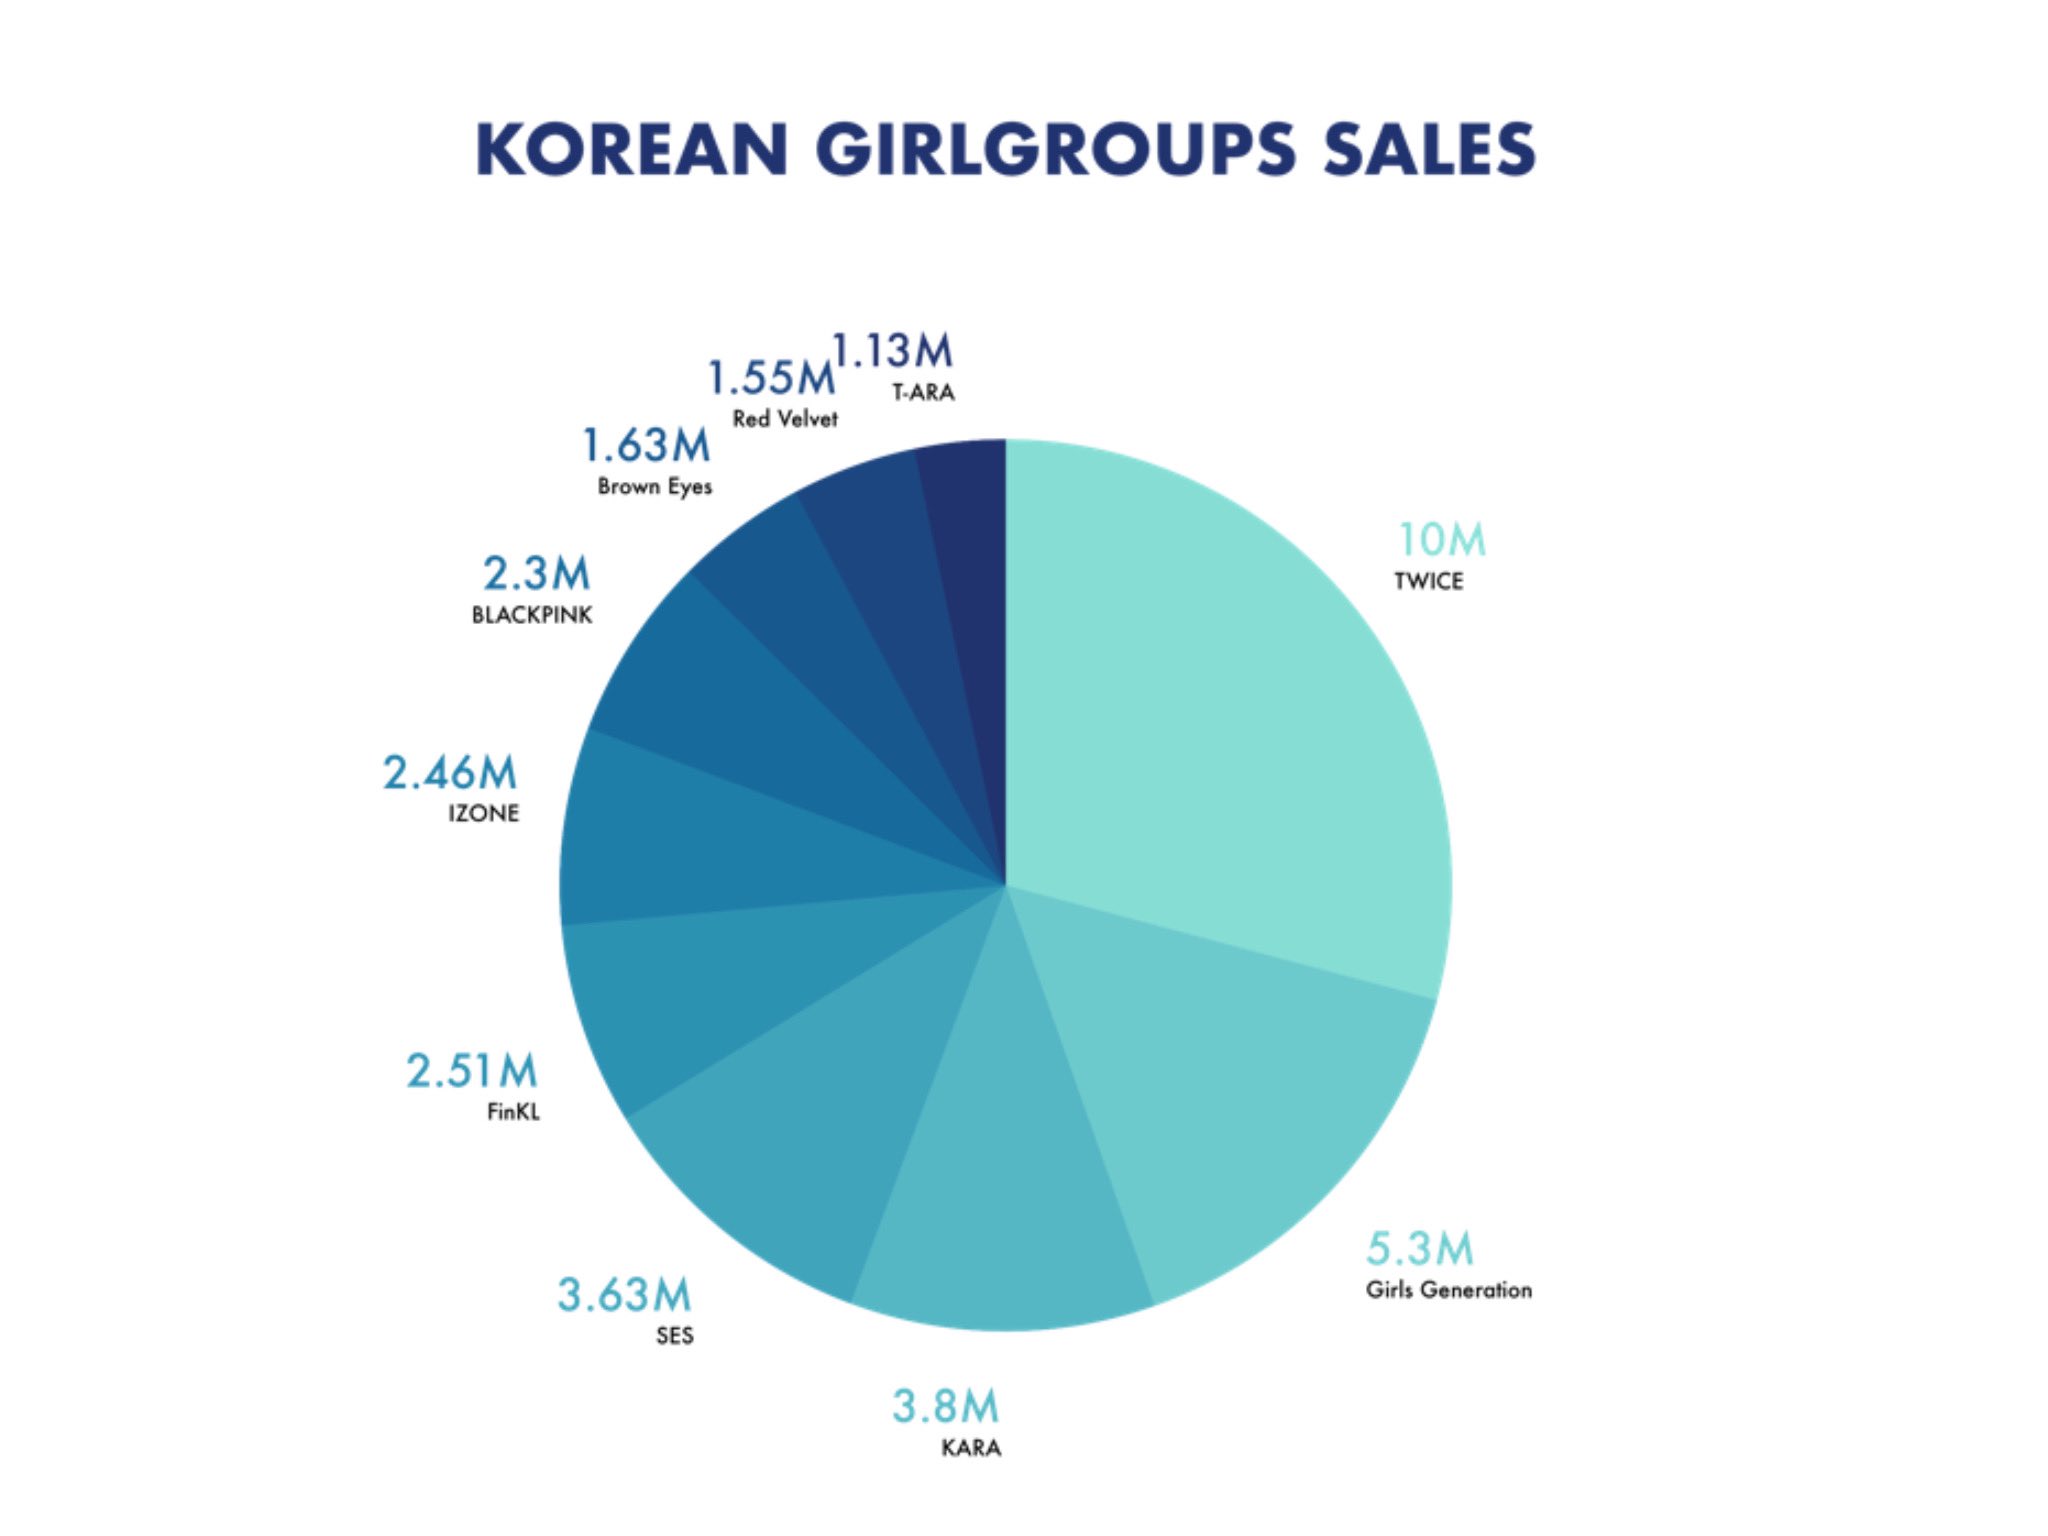 TWICE: Saiba tudo sobre o girl group que mais vendeu na história do K-Pop